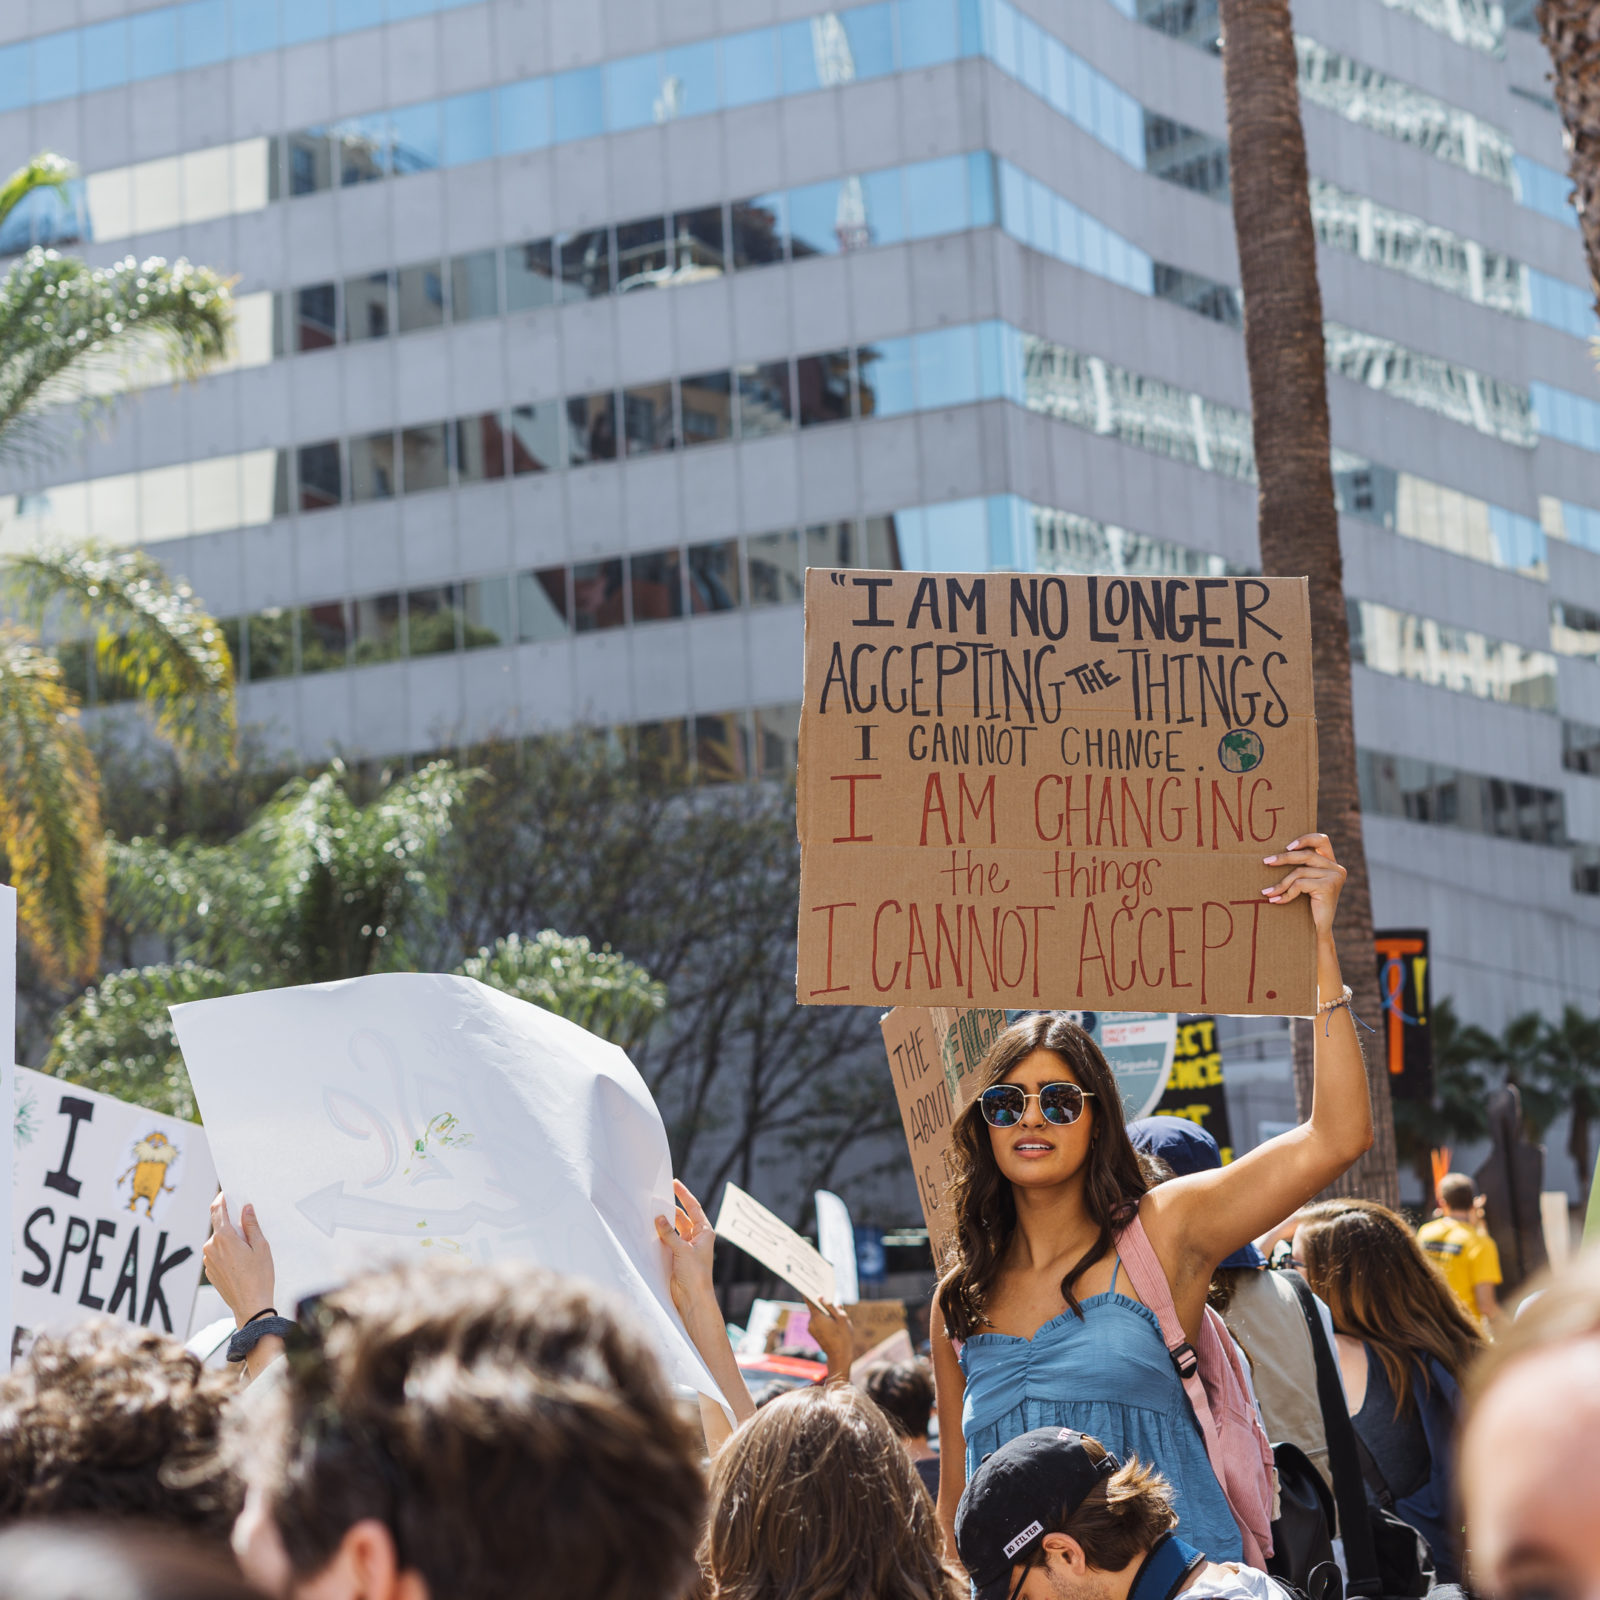 ناشط يحمل لافتة تقول "لم أعد أقبل الأشياء التي لا أستطيع تغييرها. أنا أغير الأشياء التي لم أعد أقبلها" خلال إضراب المناخ في سبتمبر 2019.